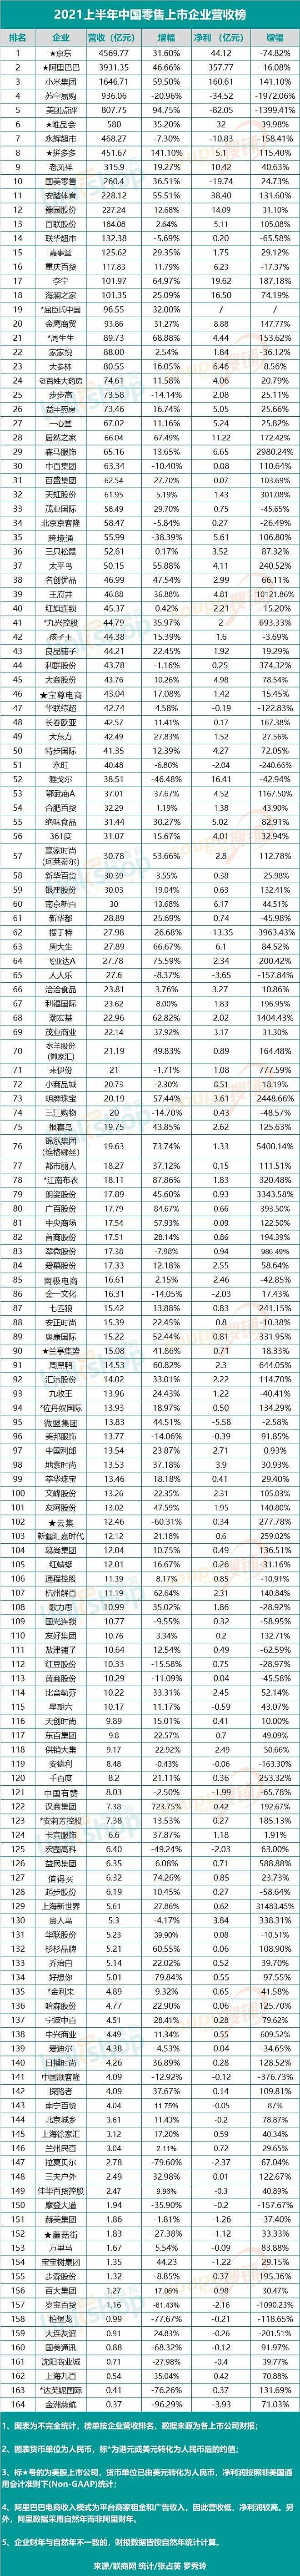 2021上半年中国零售上市企业营收排行榜 - 1